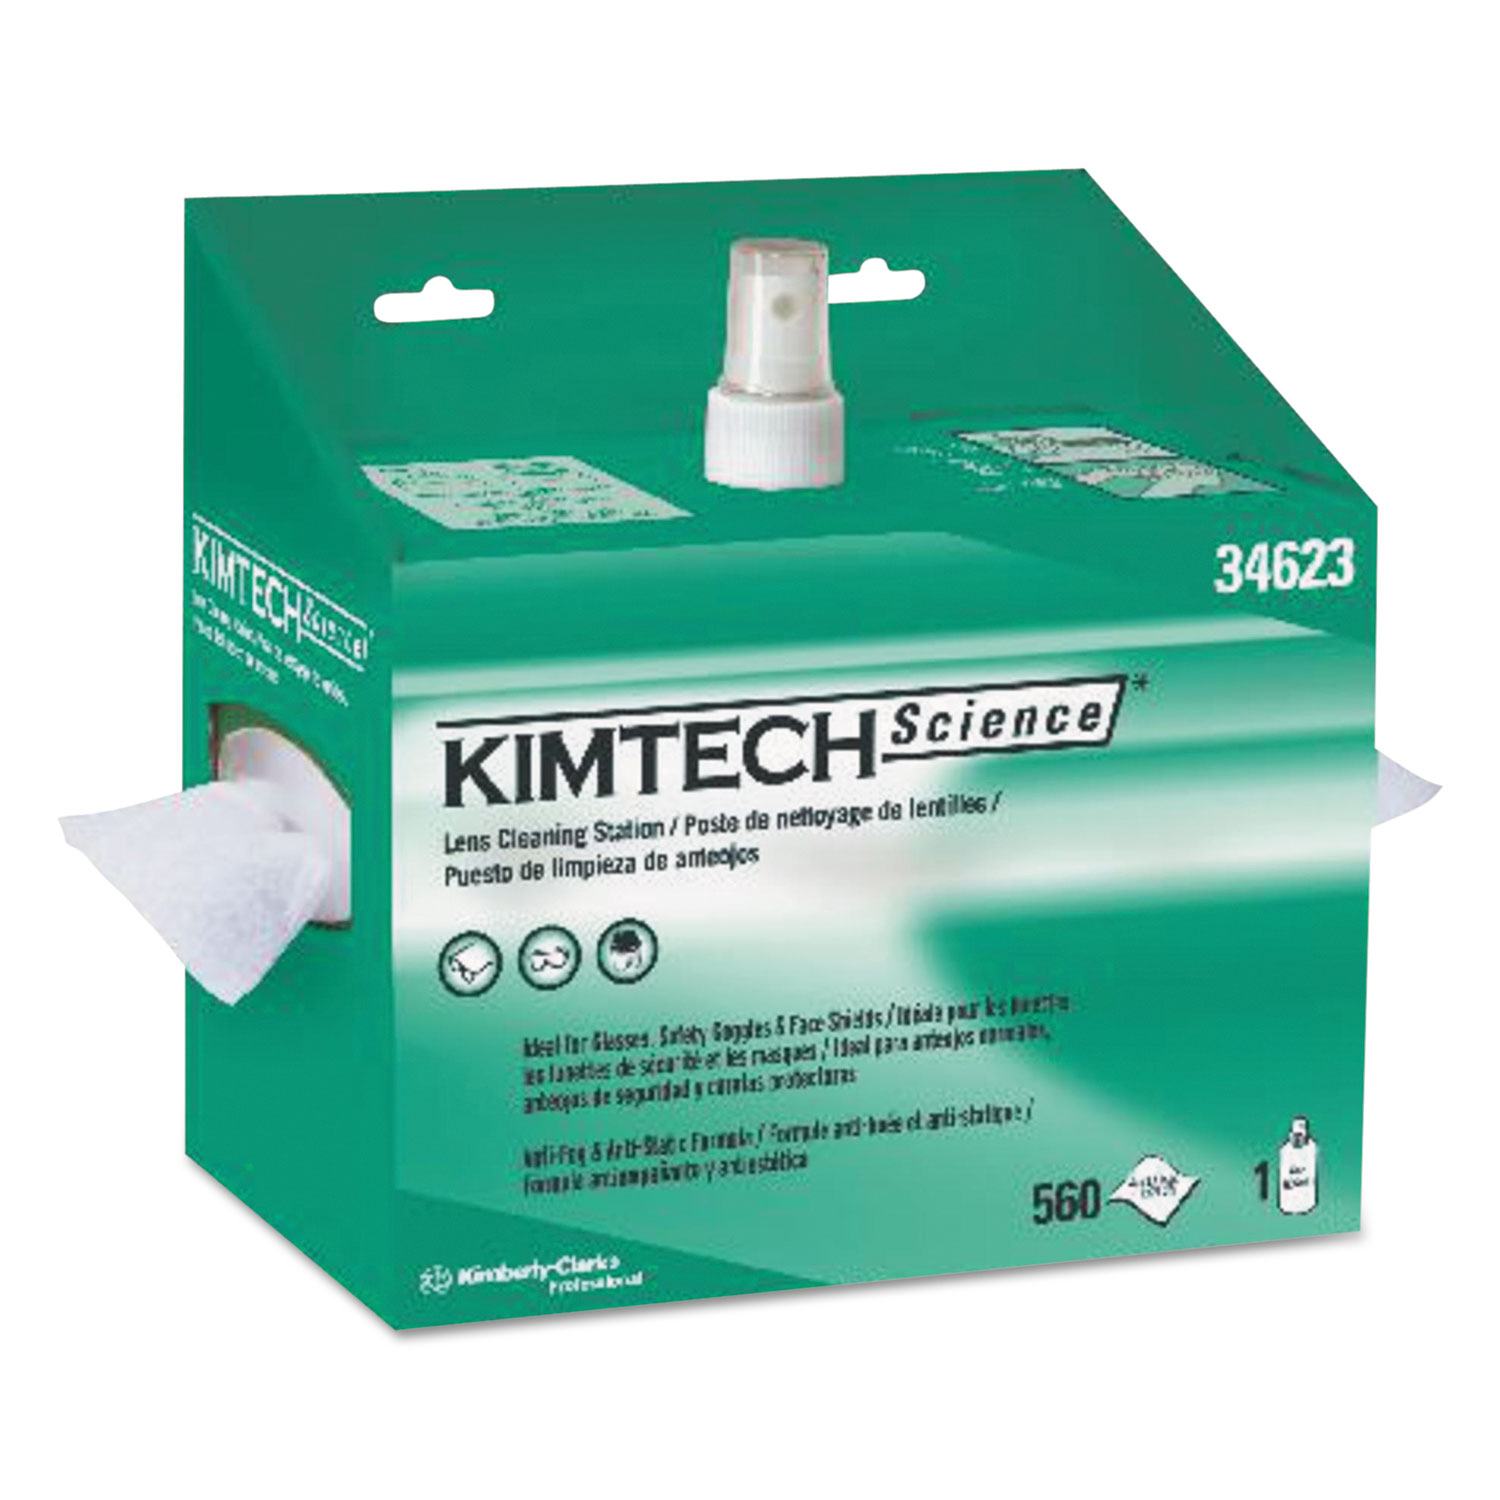  Kimtech 34623 Lens Cleaning Station, 8oz Spray, 4 2/5 X 8 1/2, 560/Box, 4 Boxes/Carton (KCC34623) 